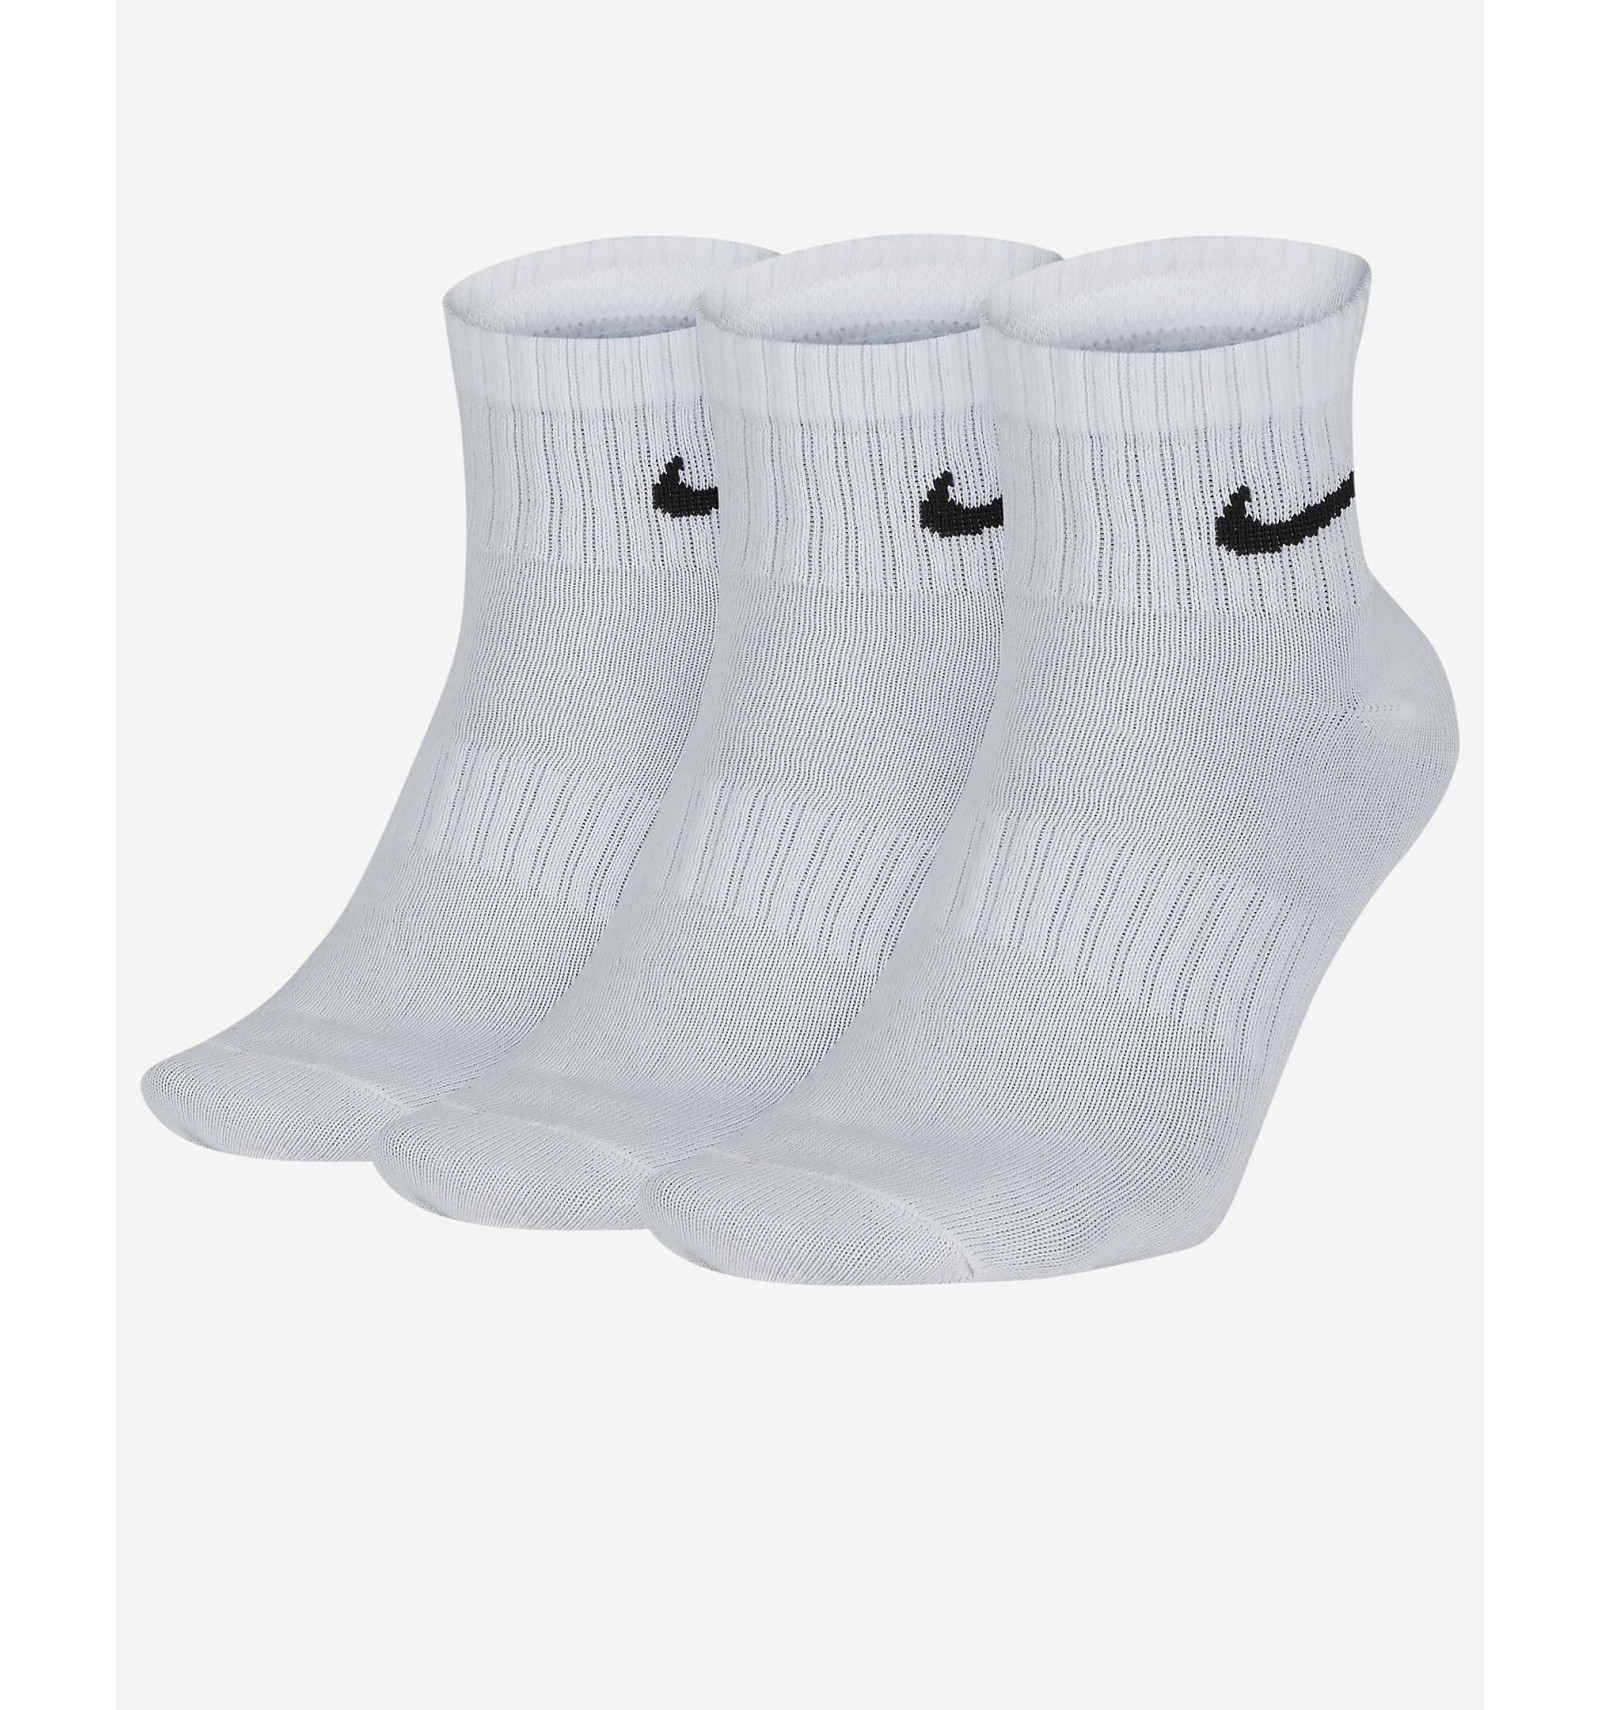 Tobilleros logo Nike 3 Pares - Vicunasport - Tu tienda de deportes en internet.